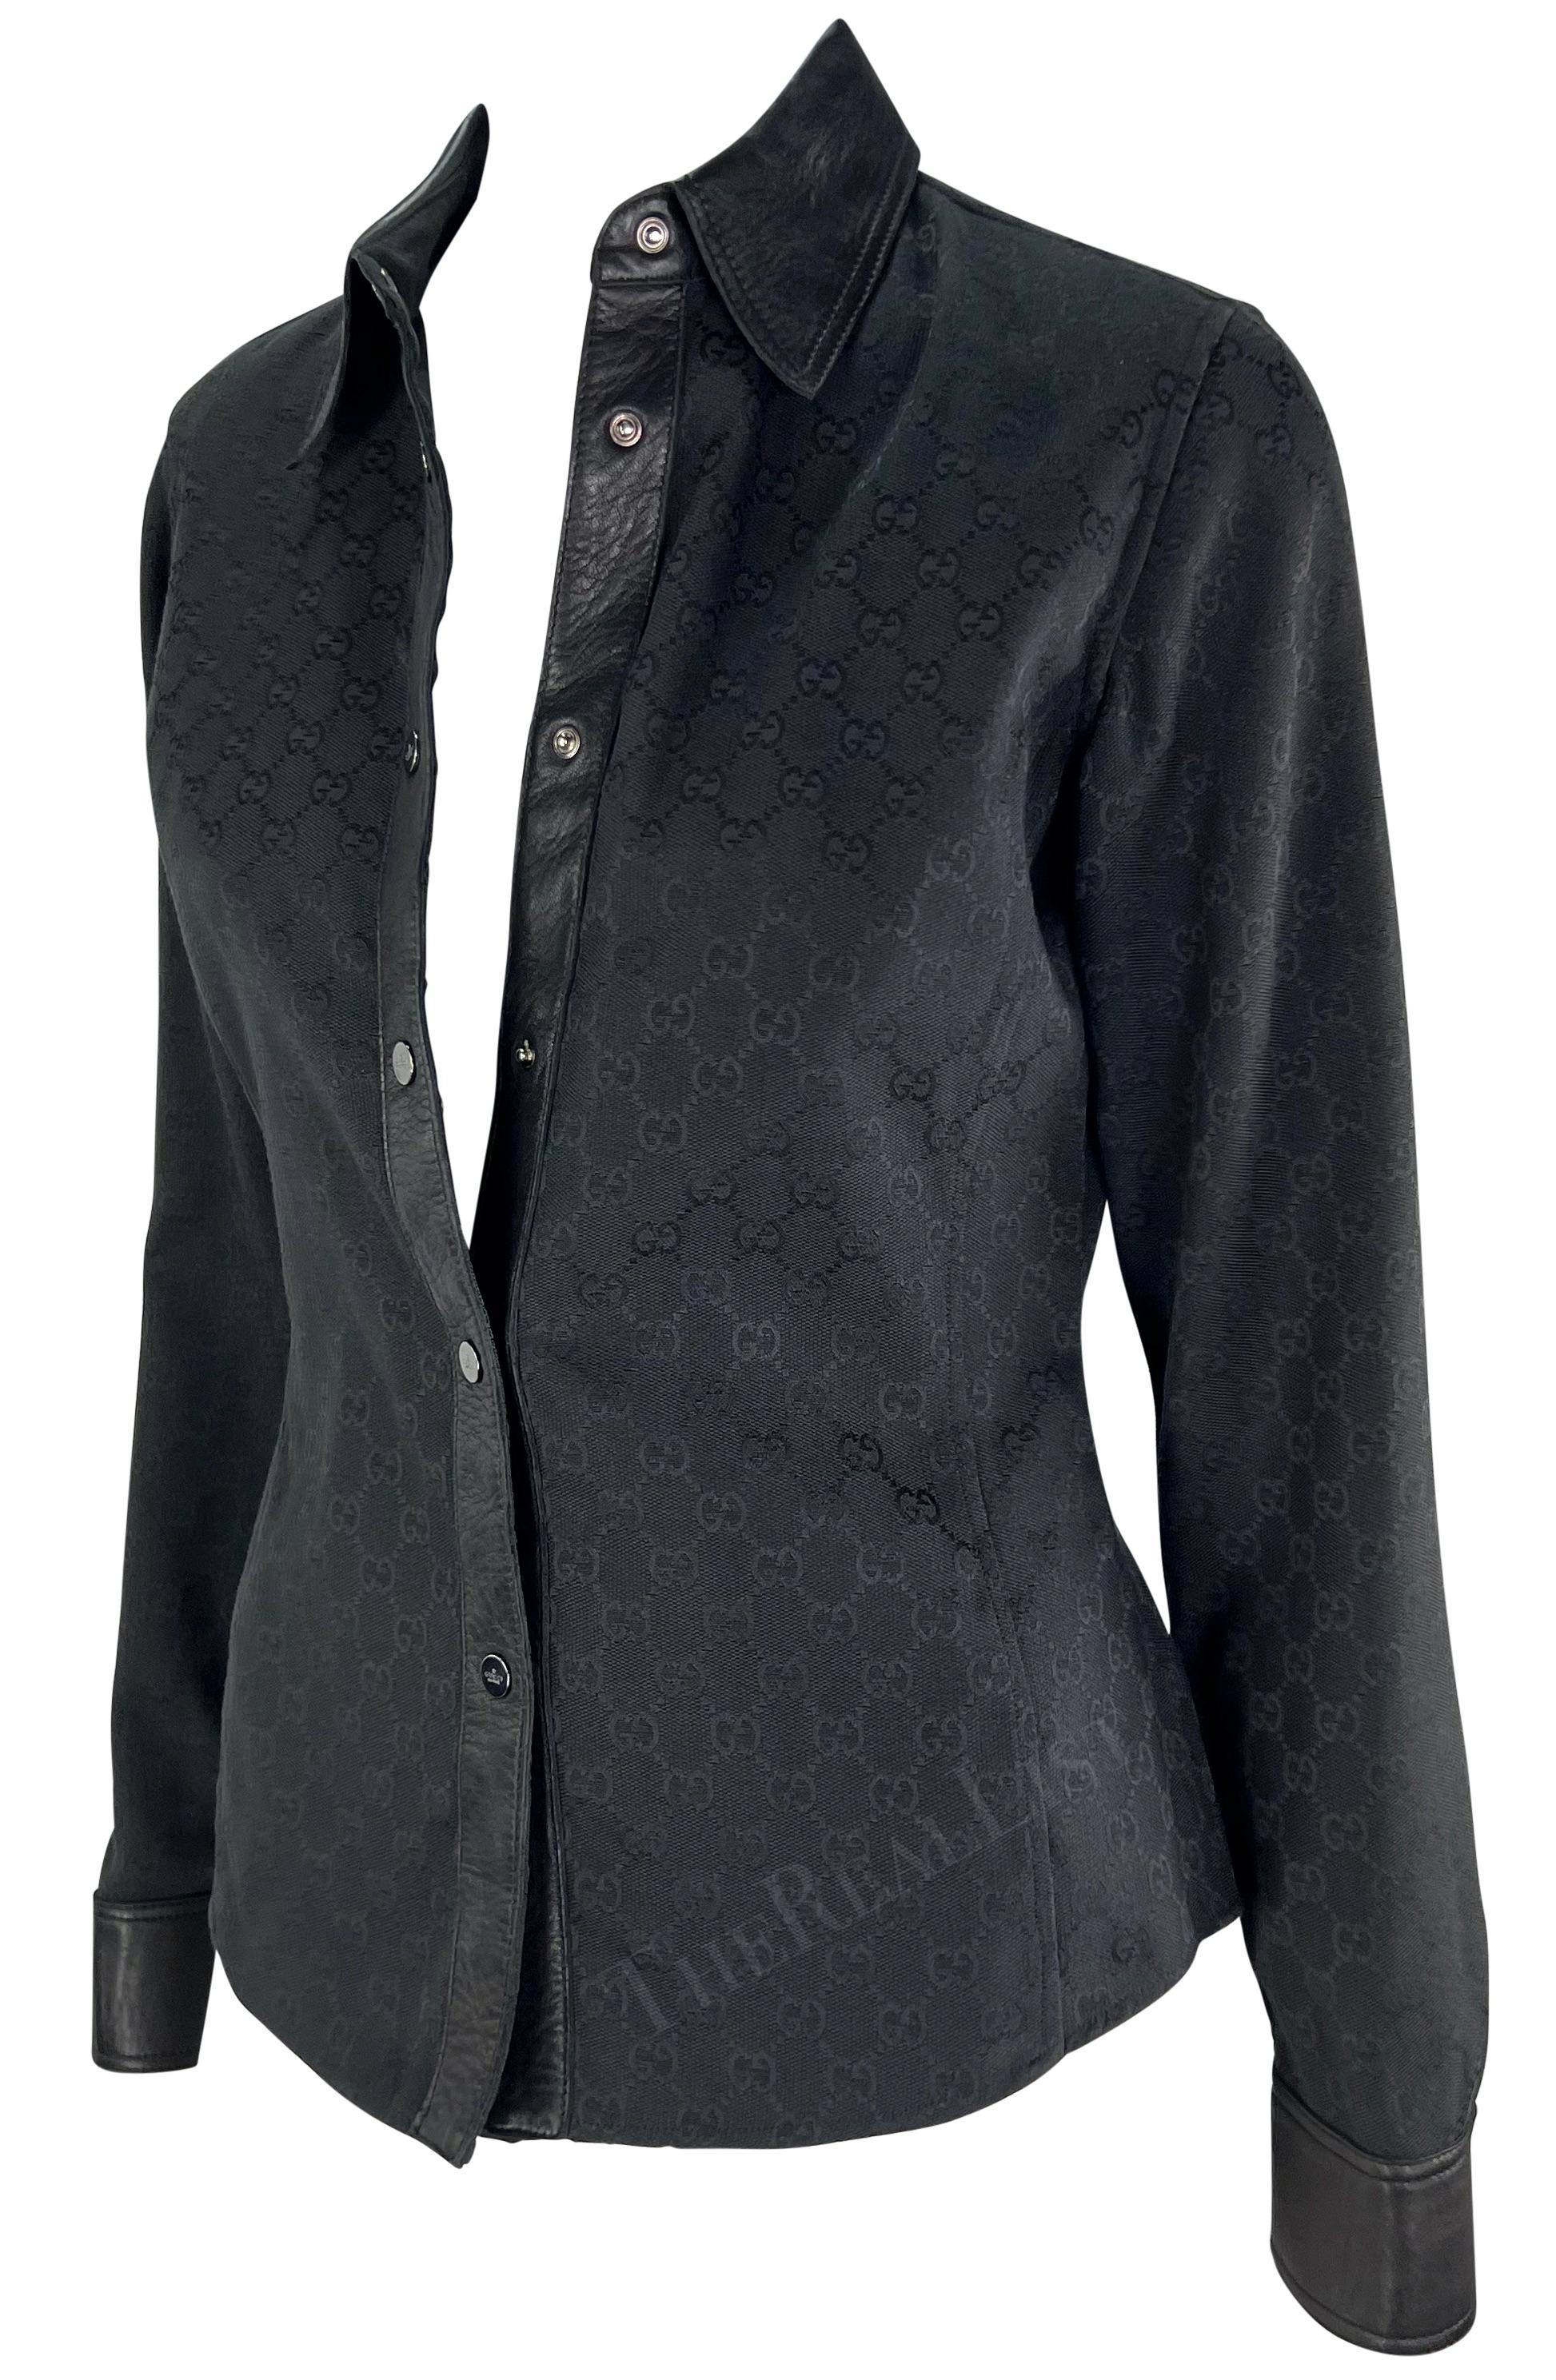 Wir präsentieren ein fabelhaftes schwarzes Gucci-Shirt mit Monogramm 'GG' aus Leinen, entworfen von Tom Ford. Dieses Oberteil aus der Herbst/Winter-Kollektion 2000 ist mit dem berühmten 